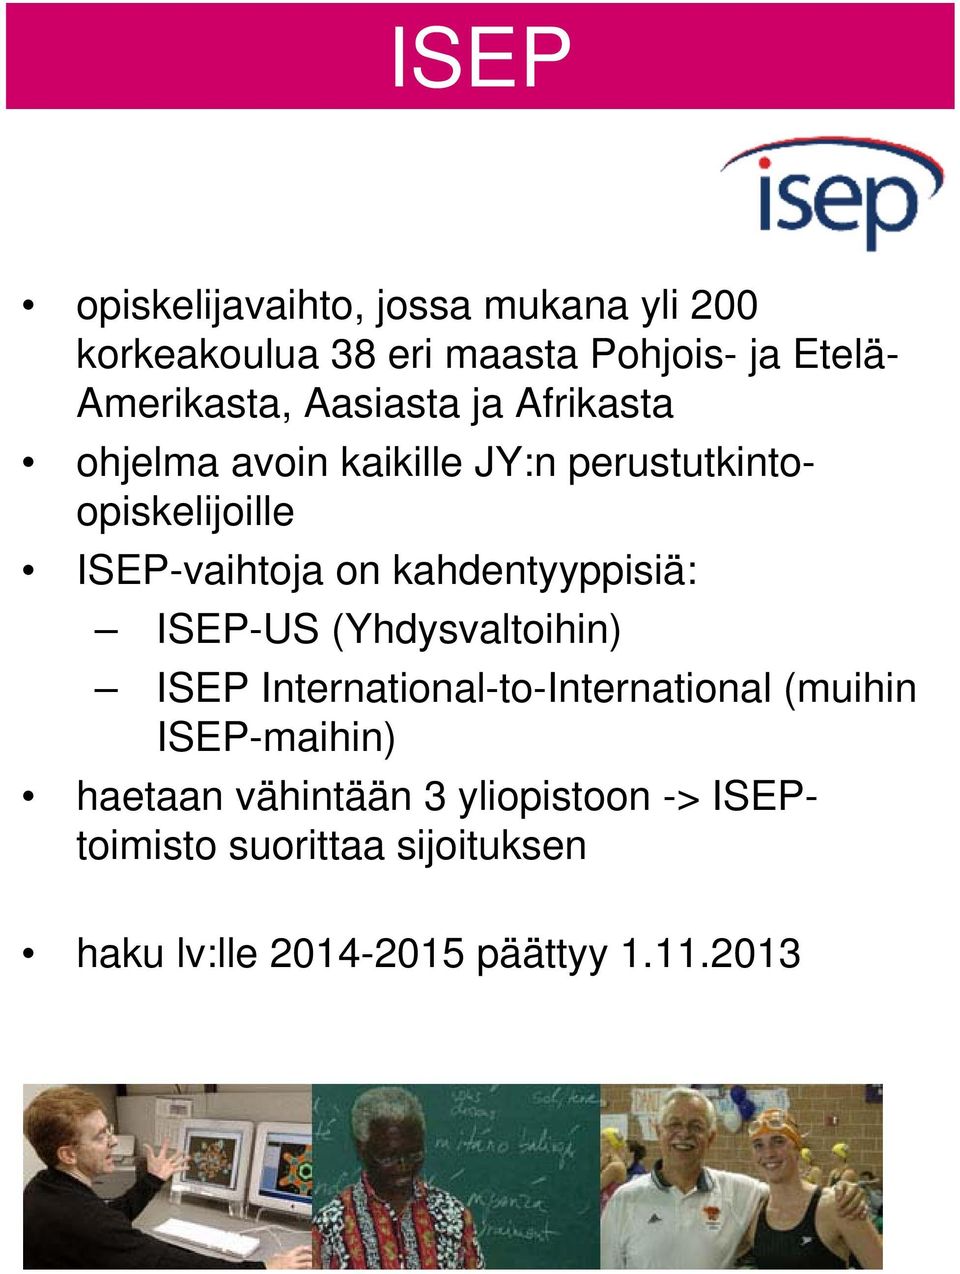 kahdentyyppisiä: ISEP-US (Yhdysvaltoihin) ISEP International-to-International (muihin ISEP-maihin)